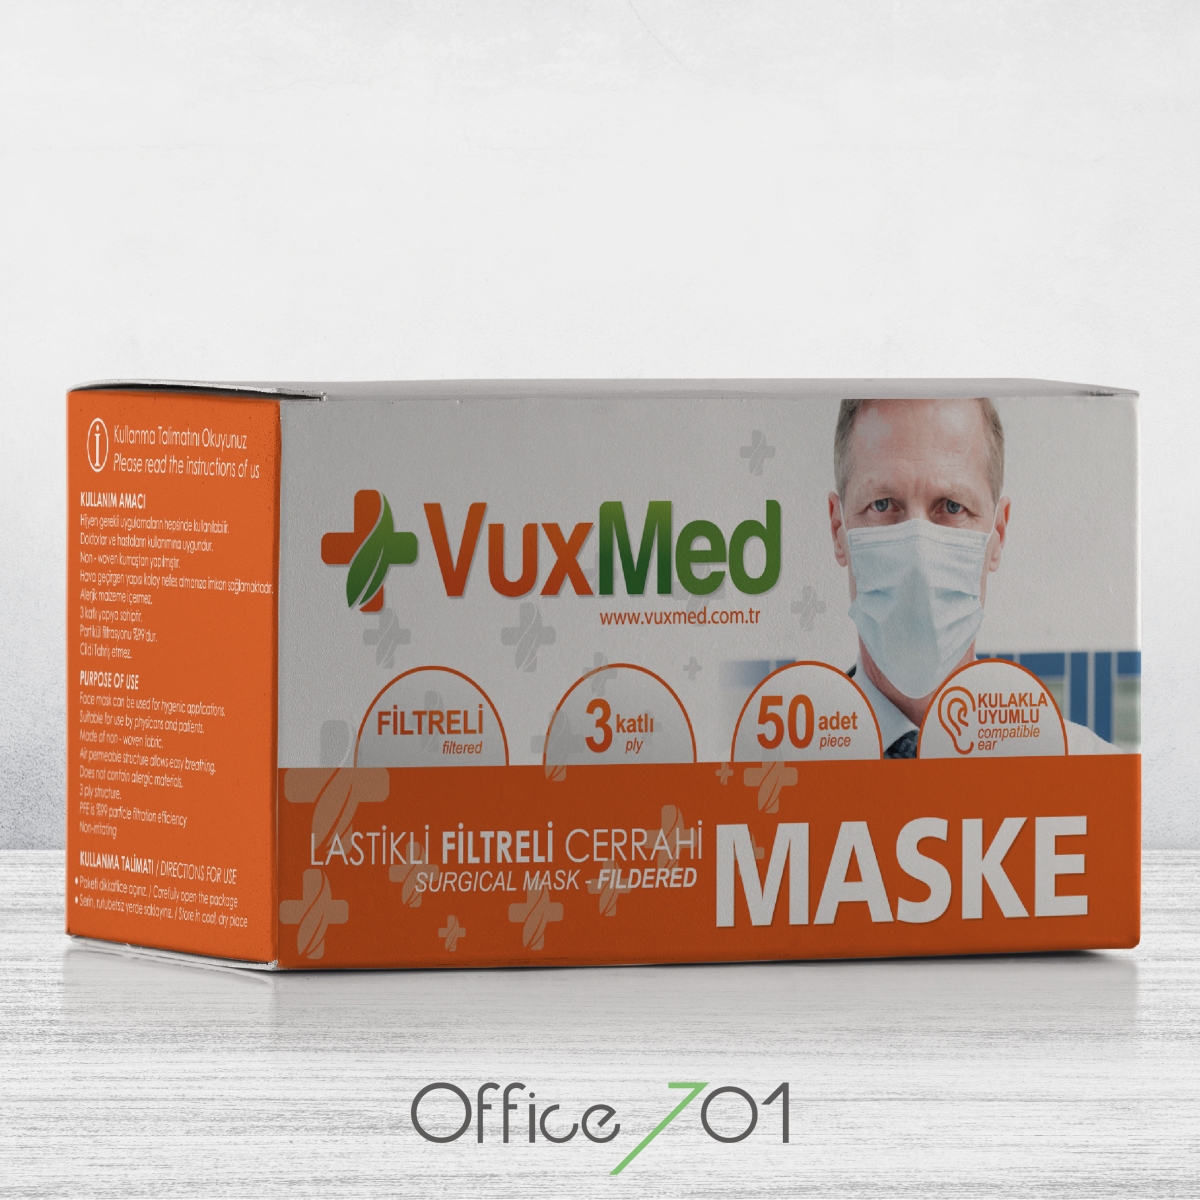 Office701 | Vuxmed Maske Ambalaj Tasarımı